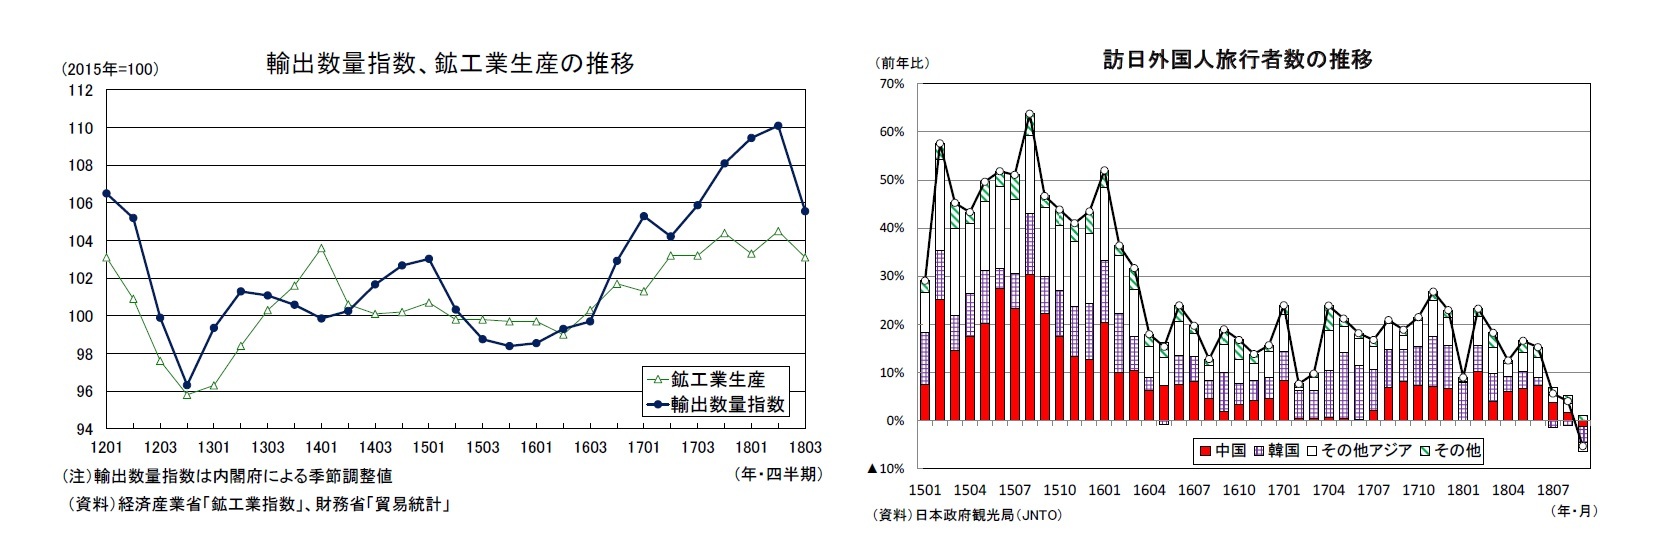 輸出数量指数、鉱工業生産の推移/訪日外国人旅行者数の推移